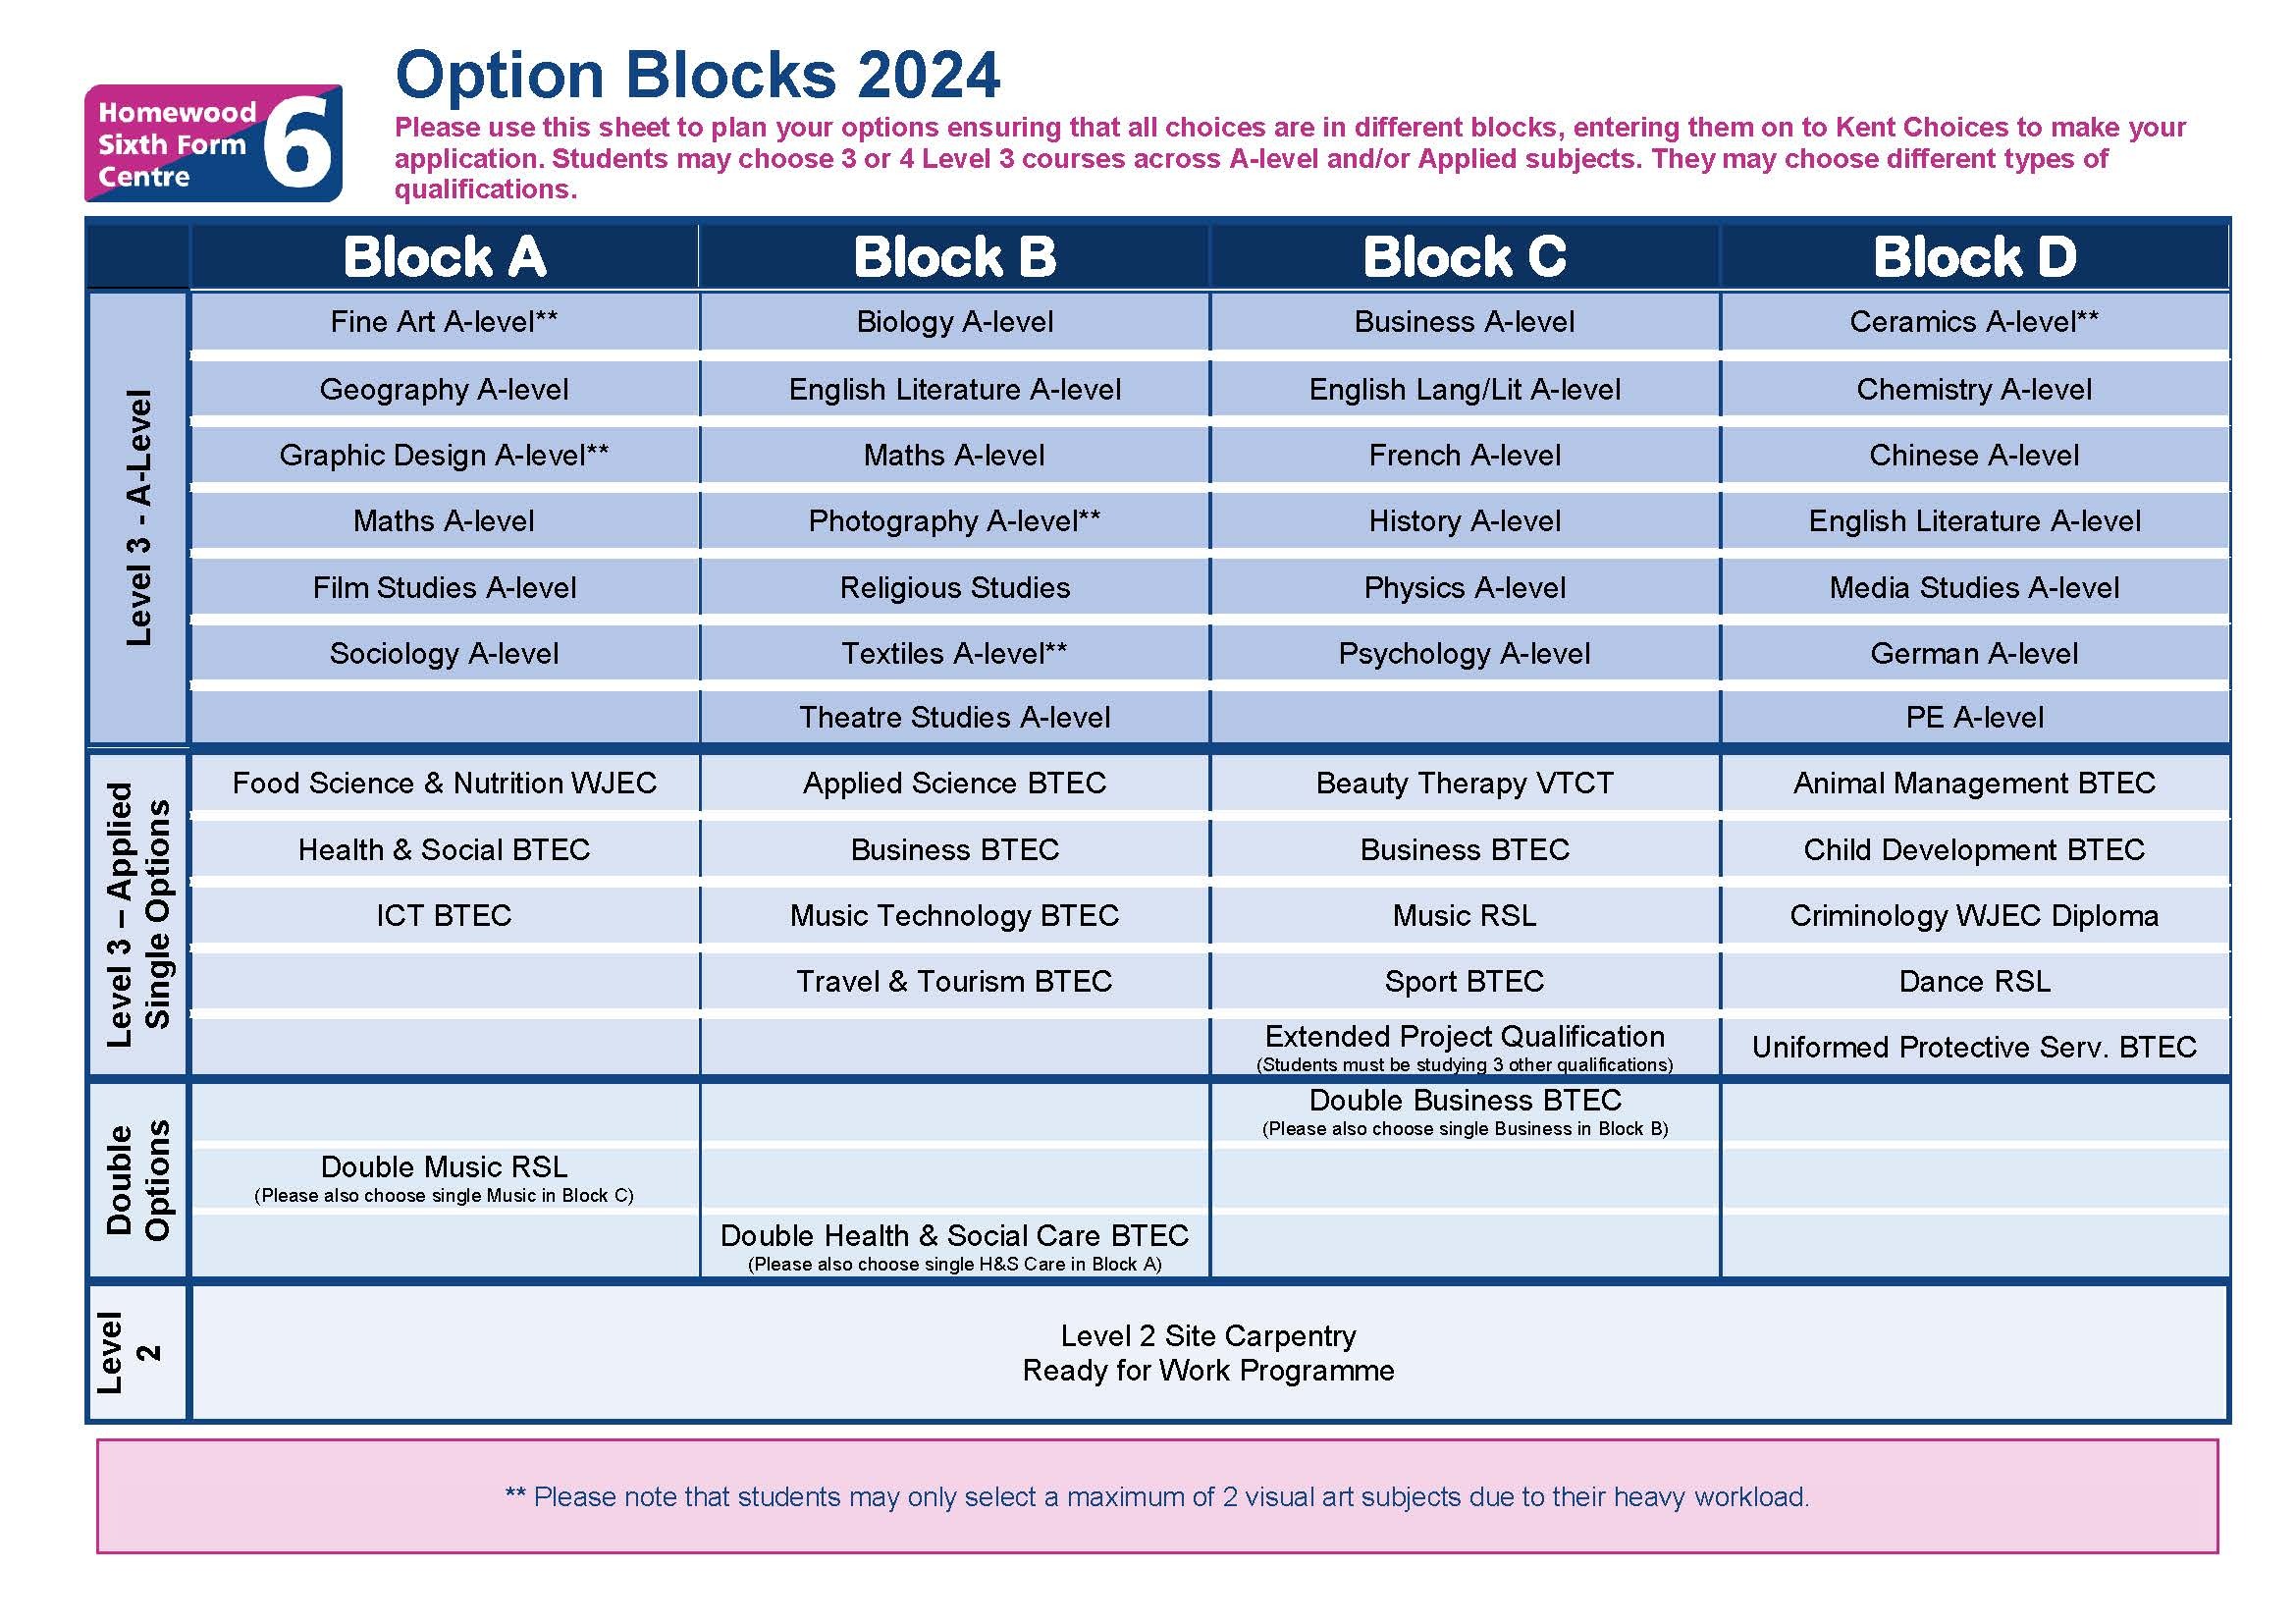 Option blocks 2024